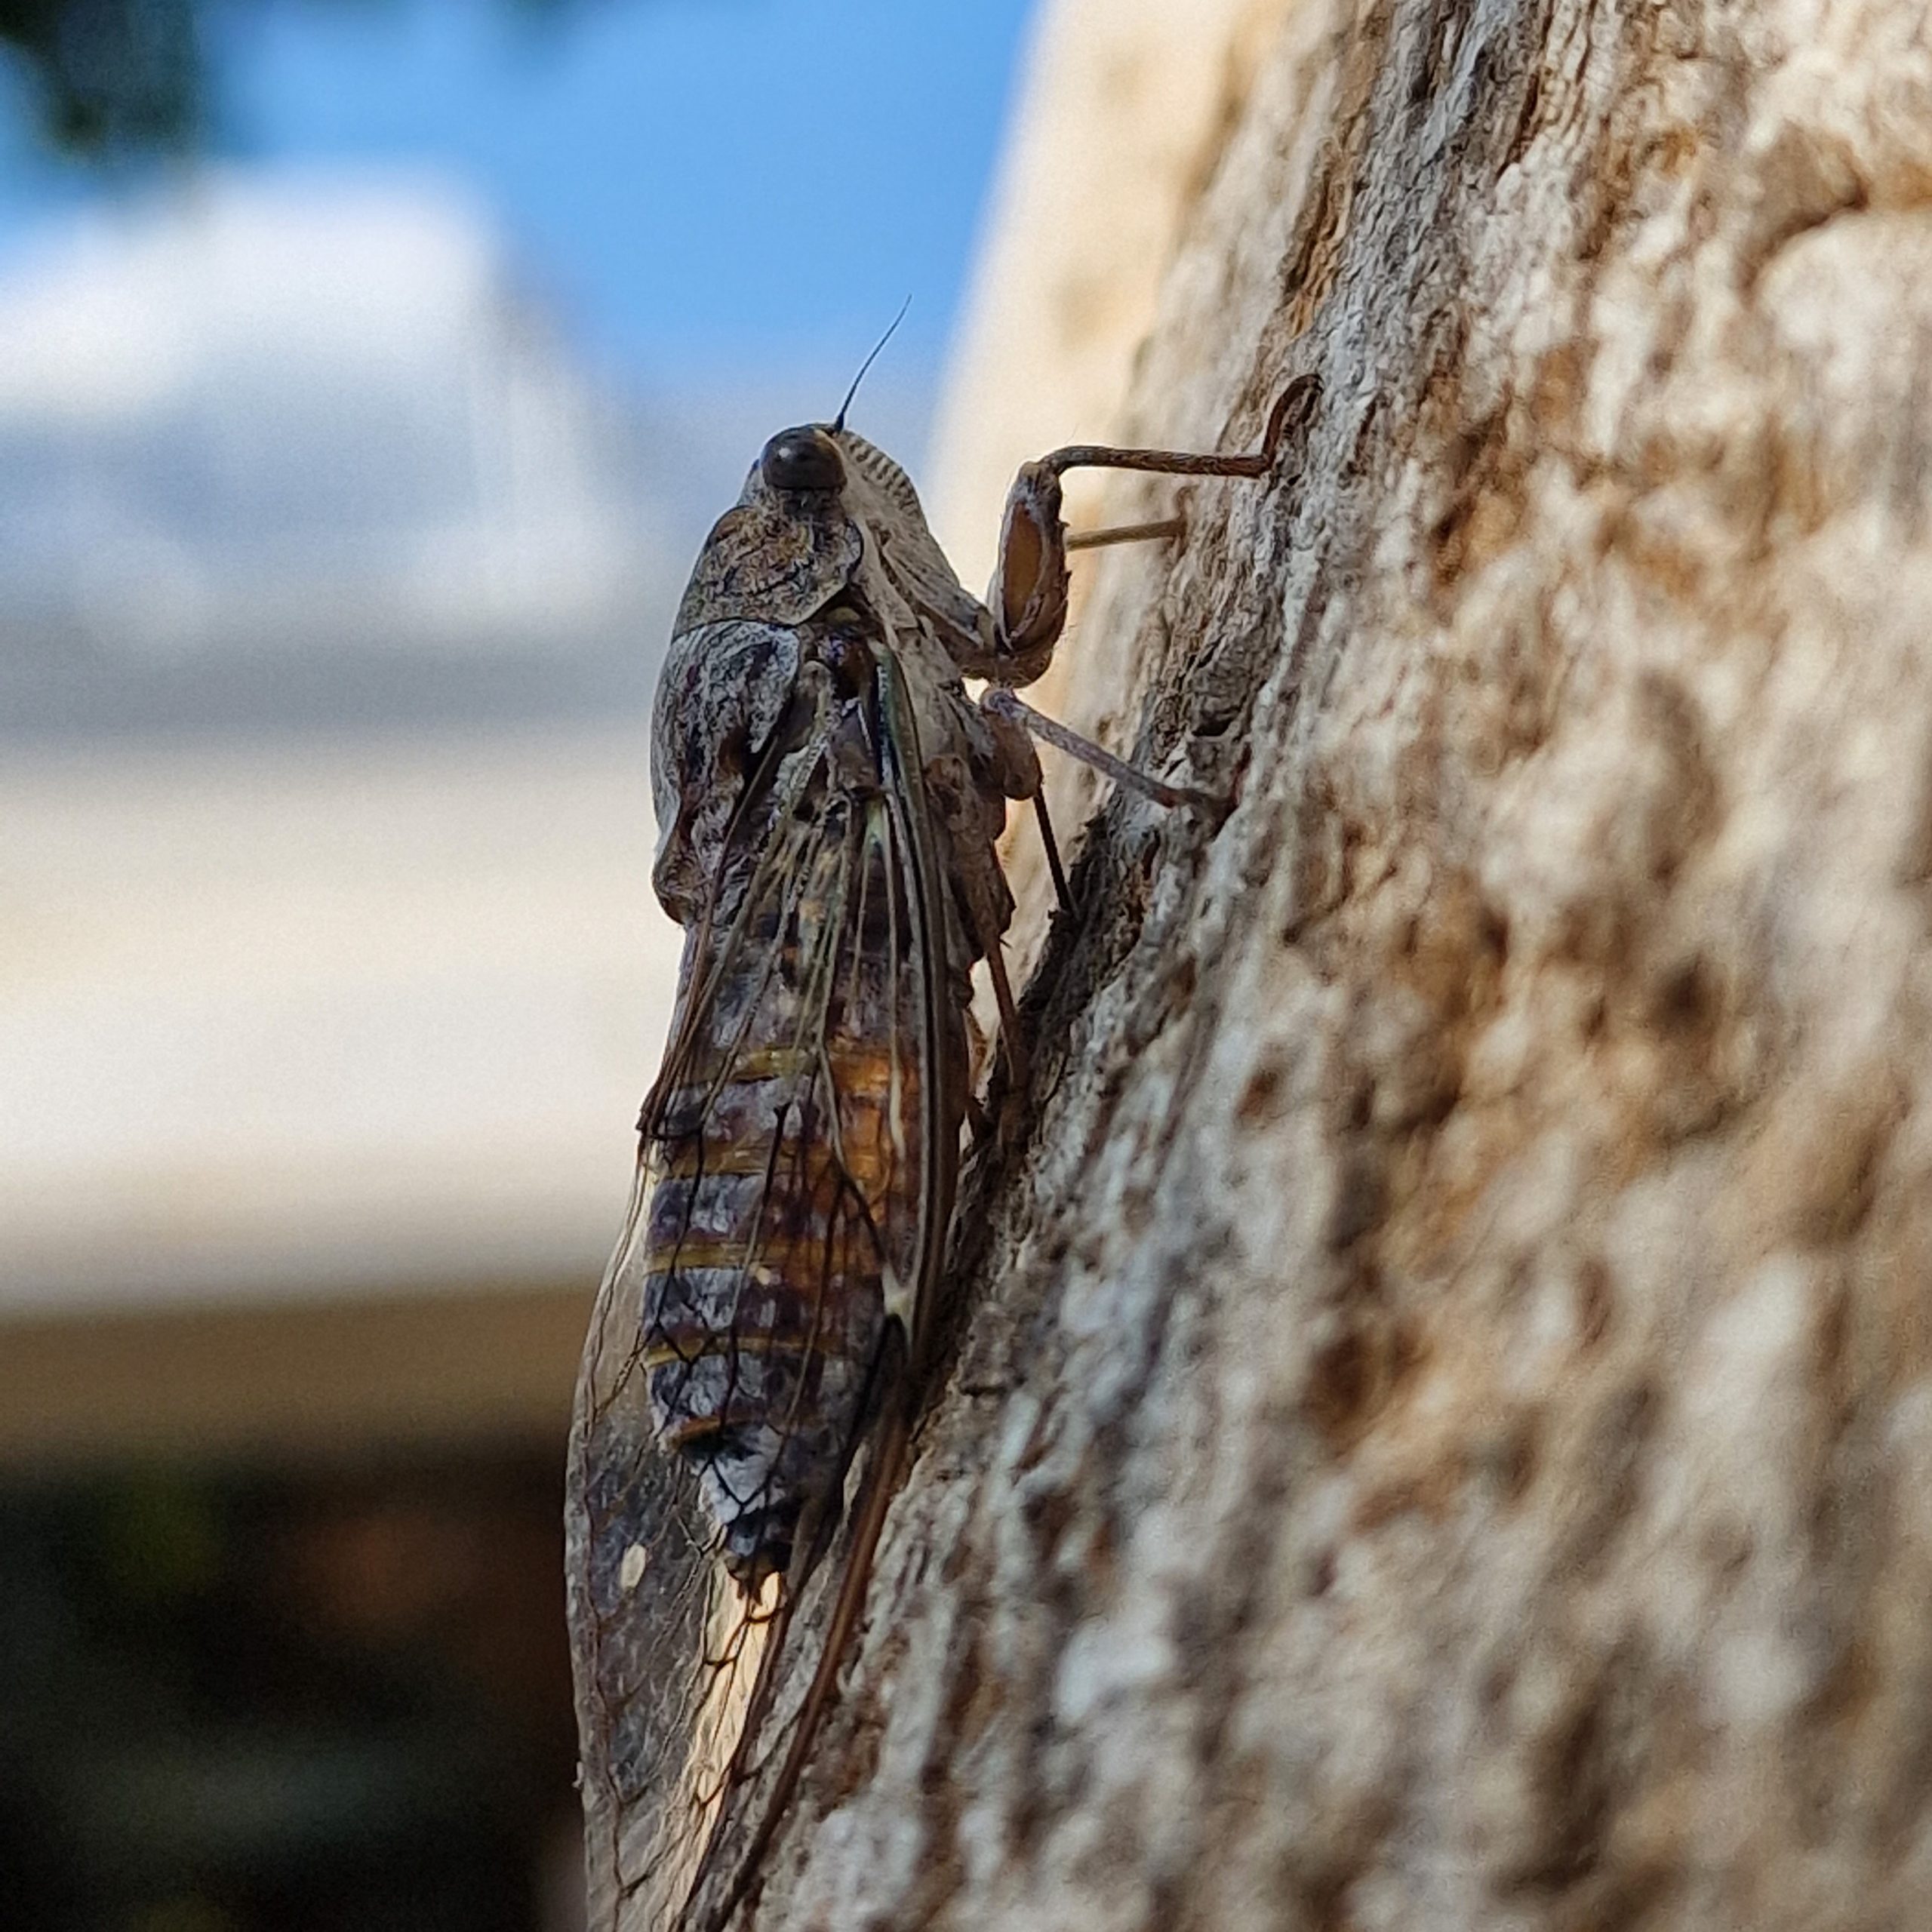 Cicade op de boom